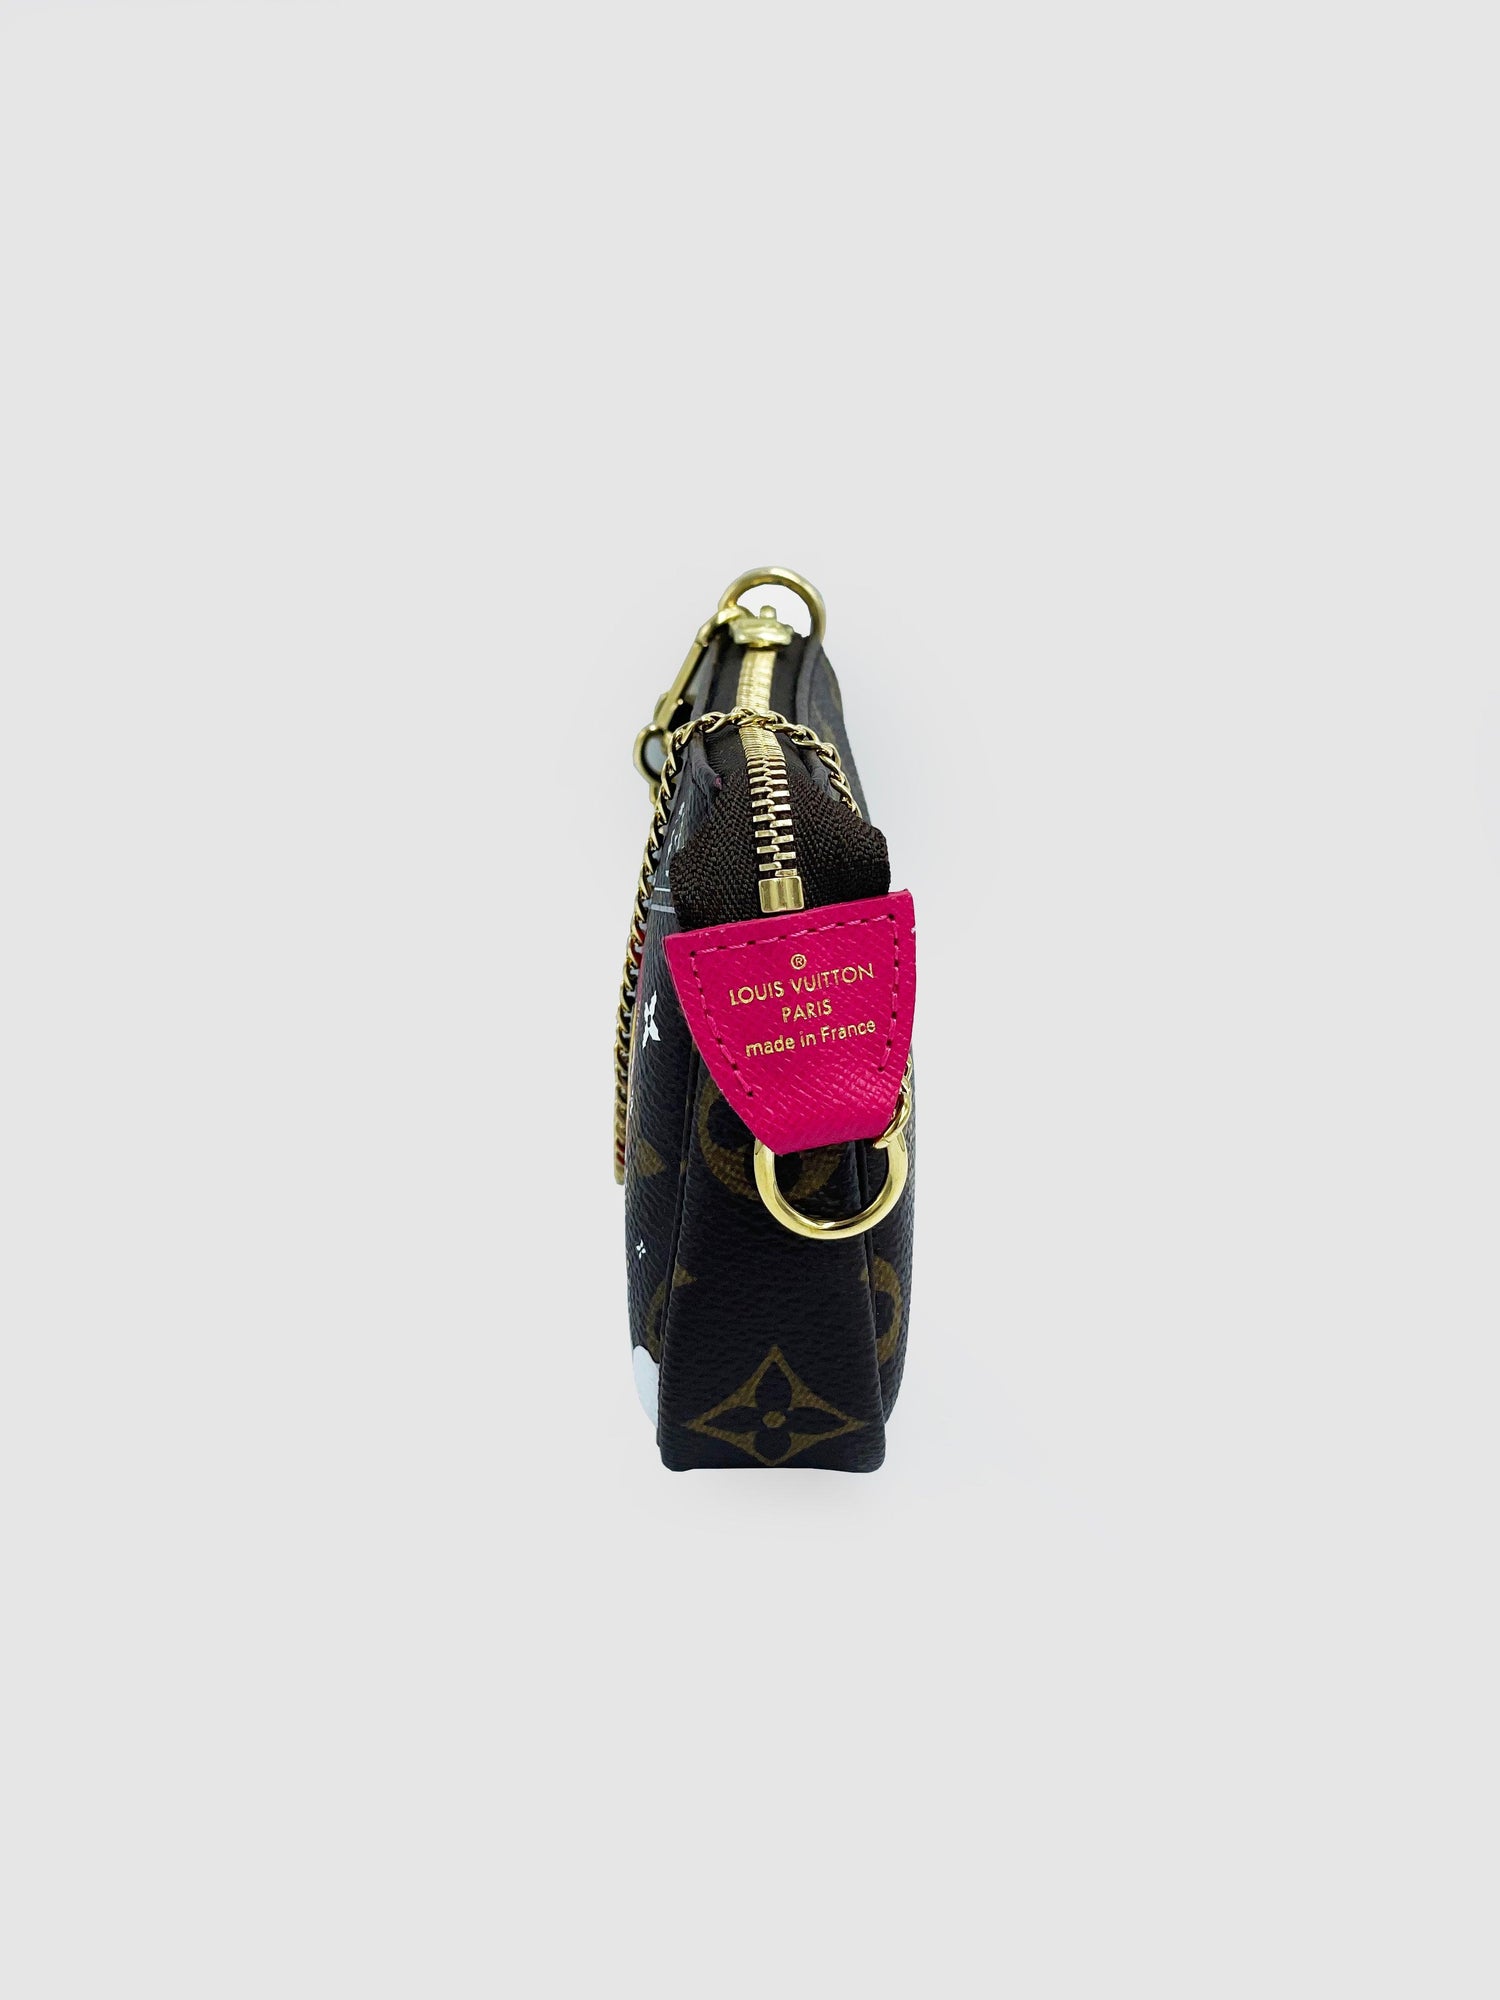 Louis Vuitton "Mini Vivienne Alp Pochette" - Second Nature Boutique